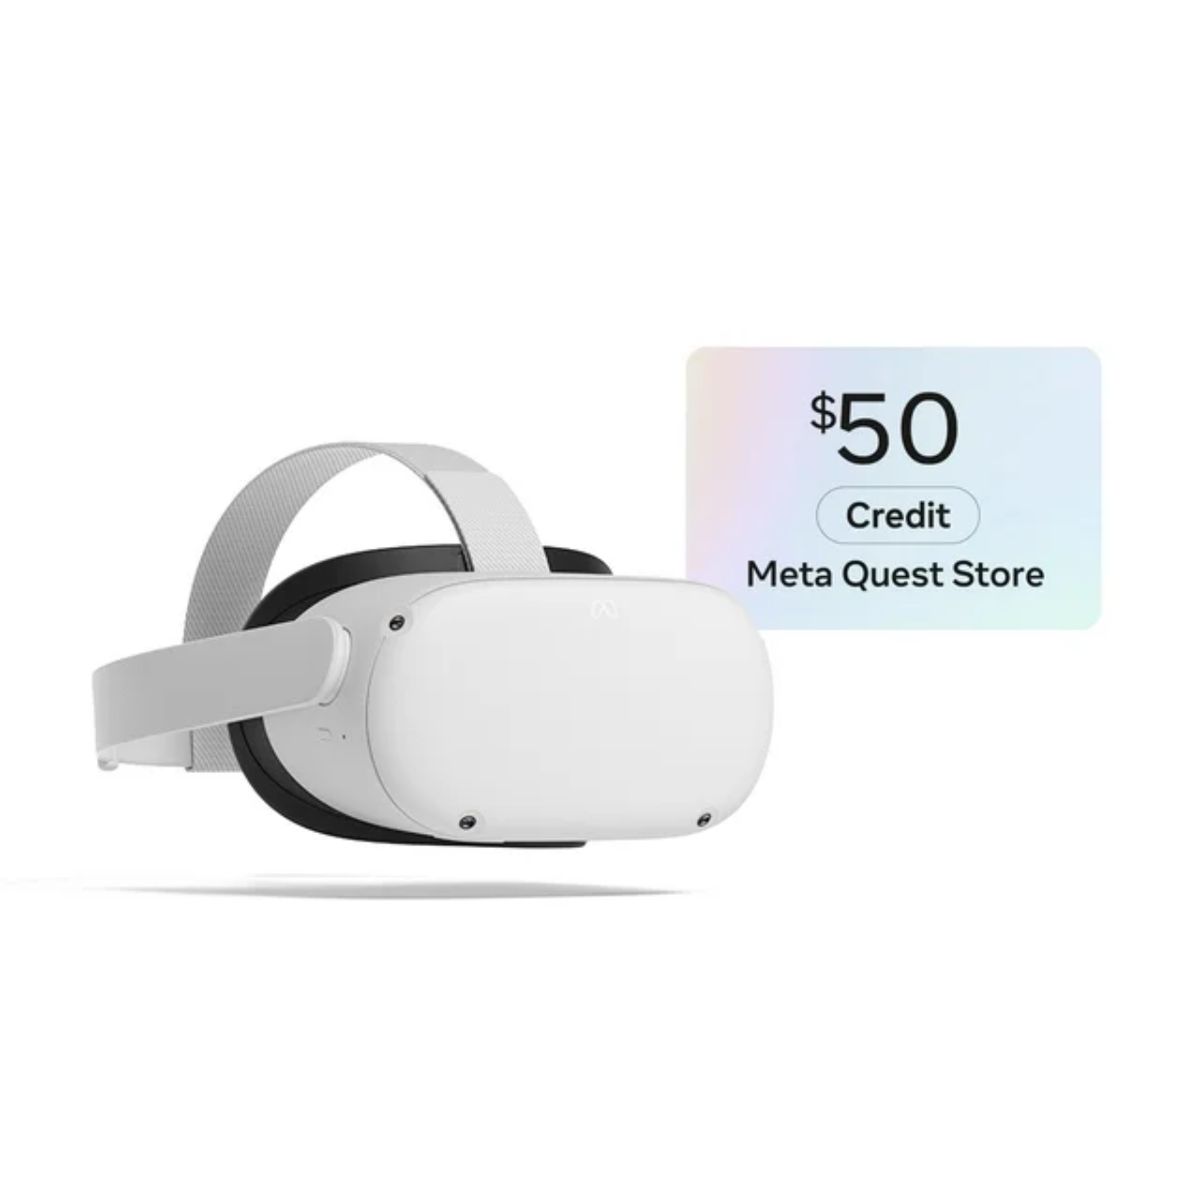 En bild som visar Meta Quest 2-headsetet sittande bredvid en bild av ett presentkort i Meta Quest Store med $50 skrivet på.